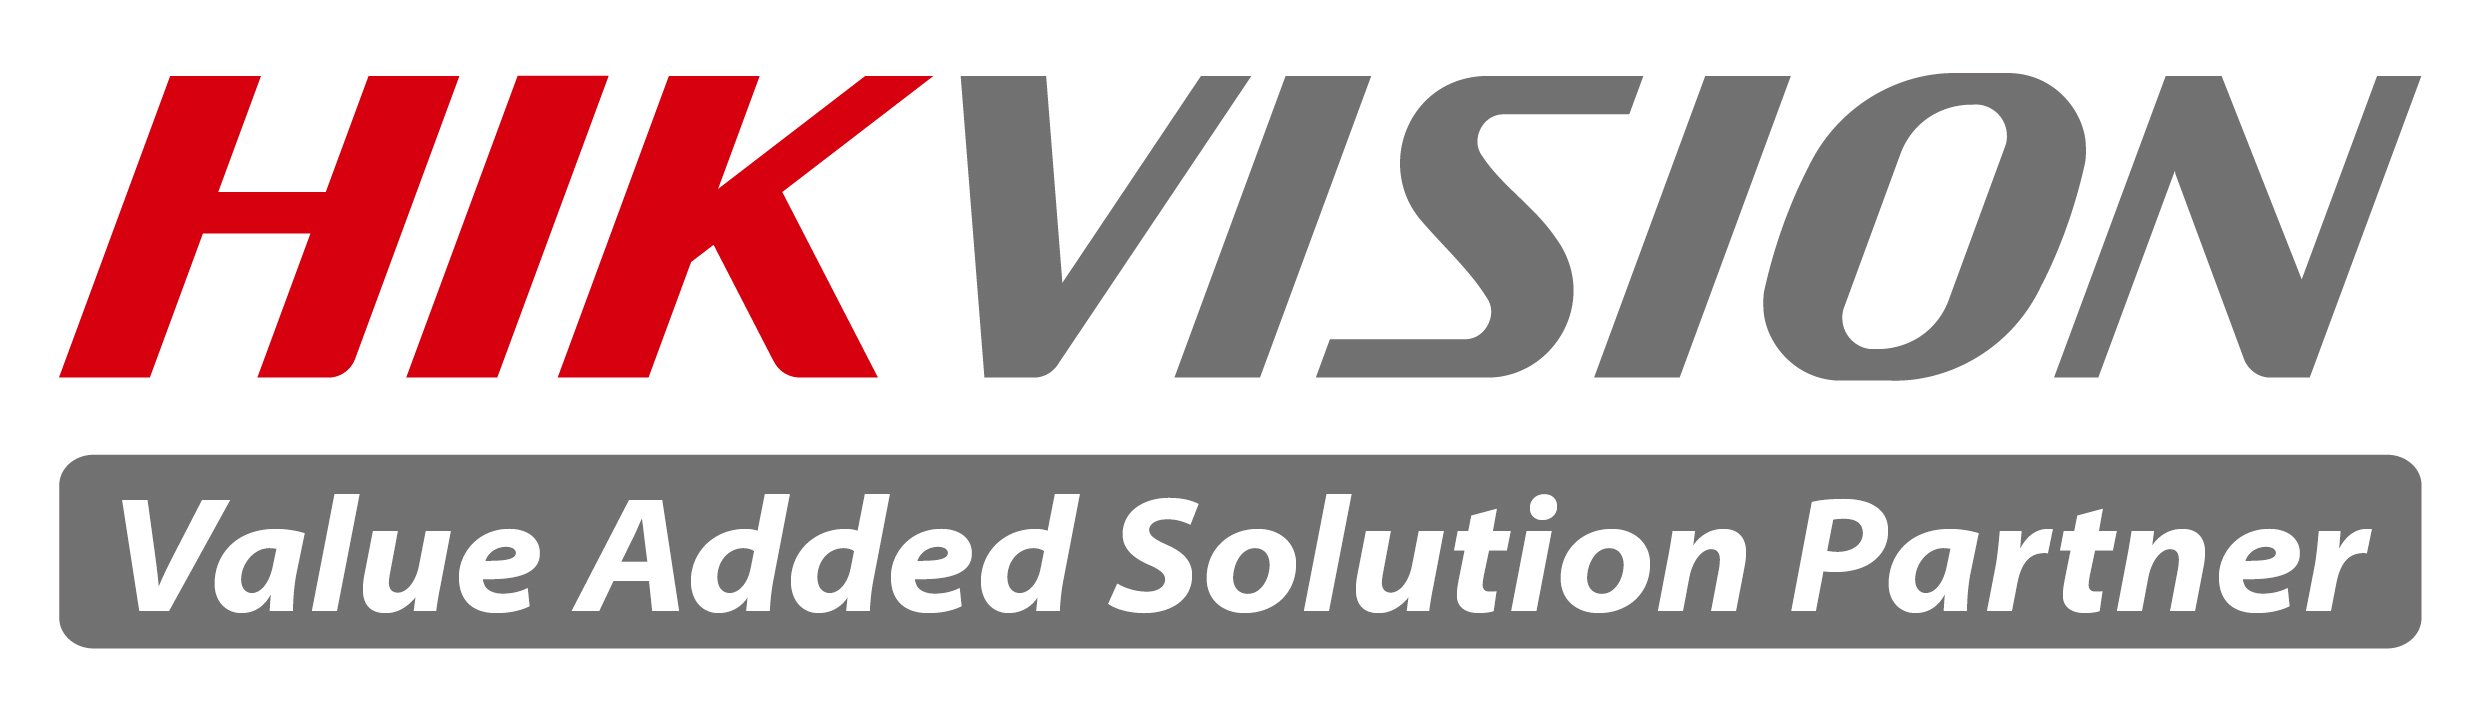 hikvision-vasp-logo